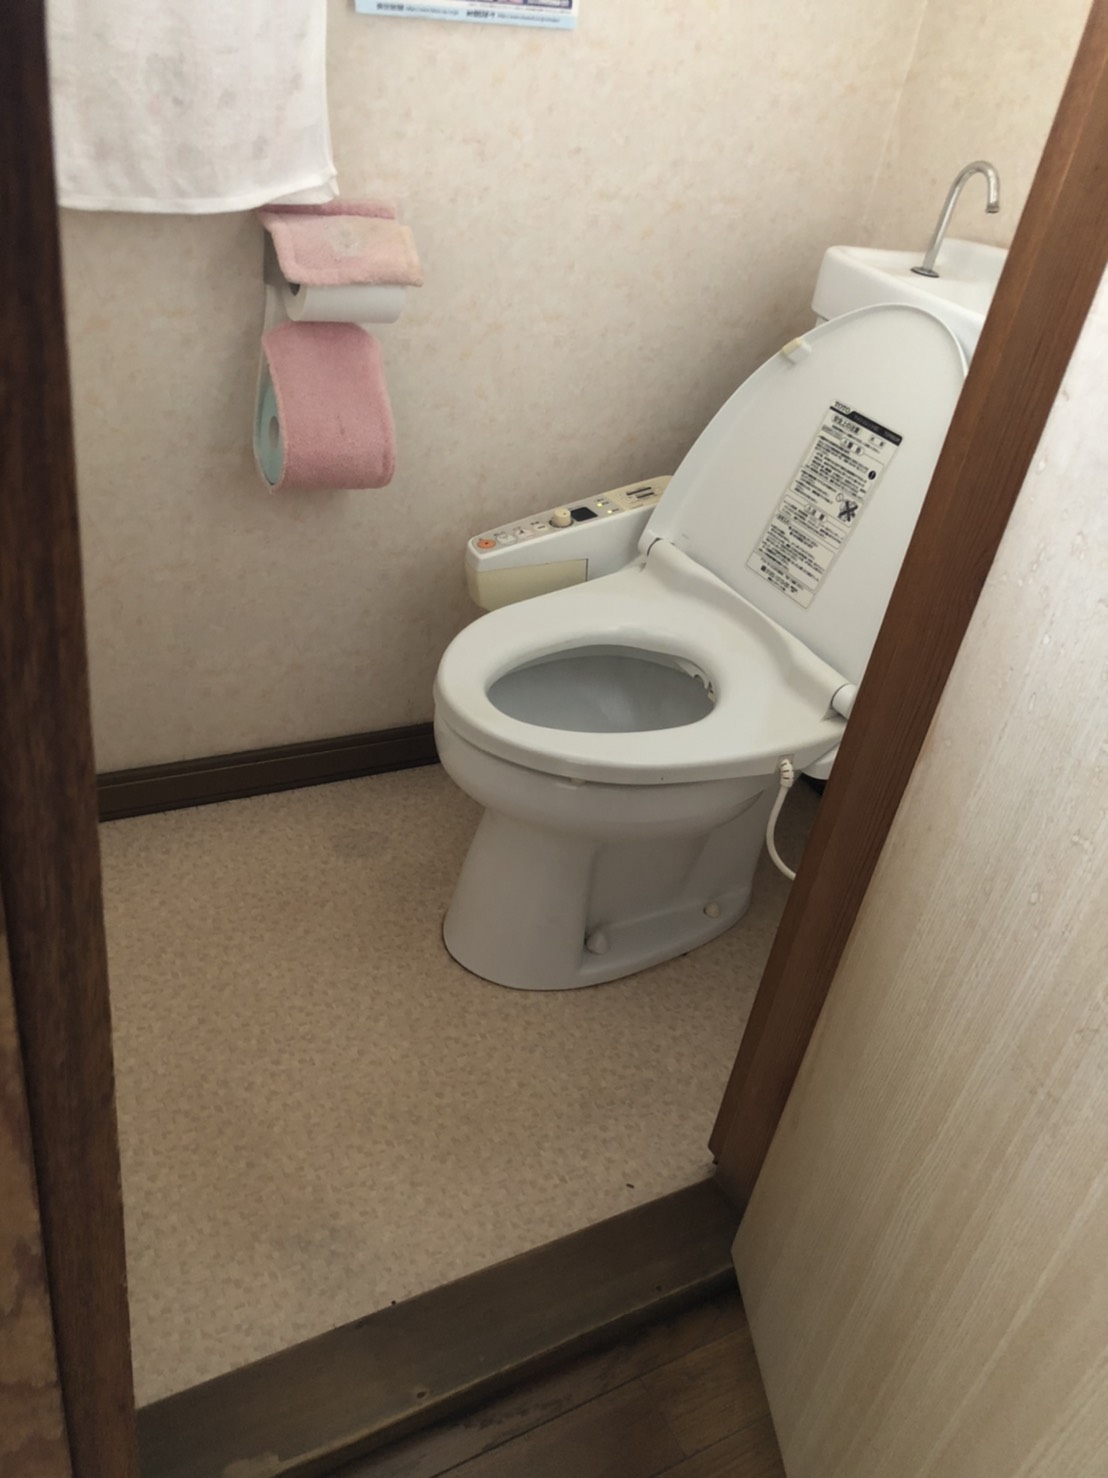 【千葉市Y邸】洋式トイレの取り替えを行いました。 千葉市中央区の新築（注文住宅）・リフォーム工事なら株式会社保工務店